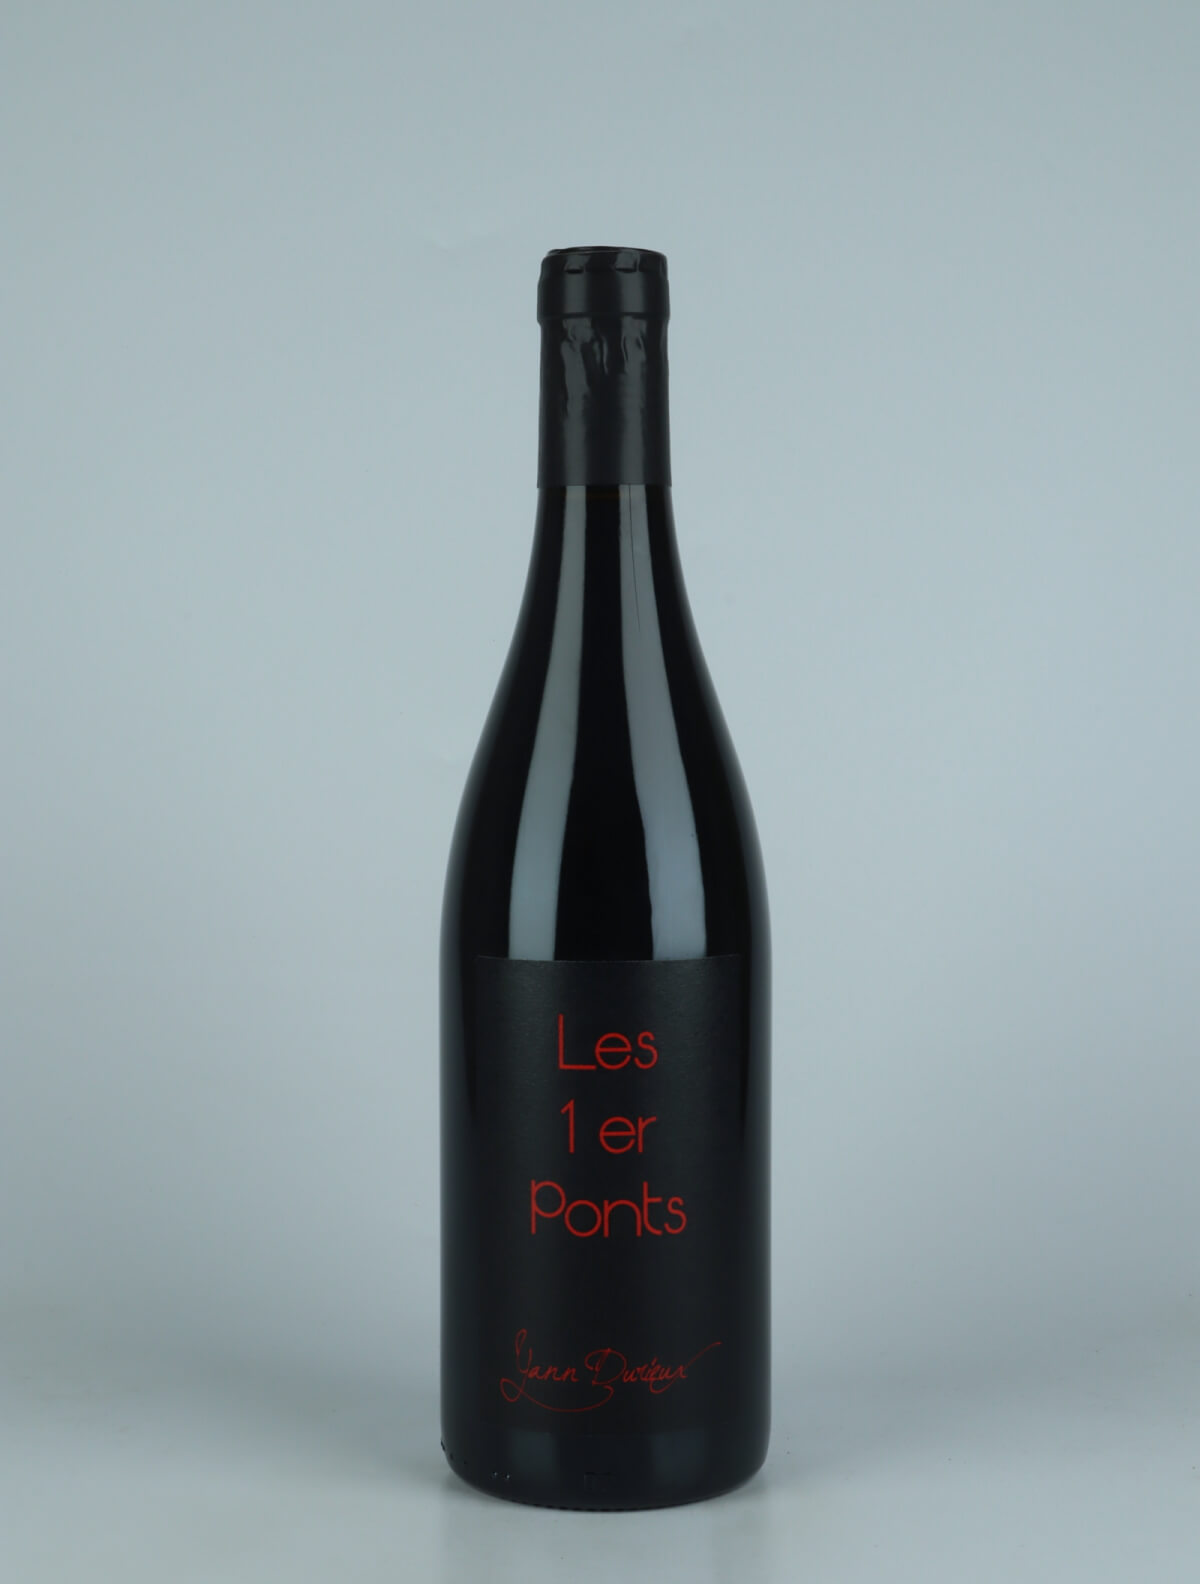 En flaske 2020 Les 1er Ponts Rødvin fra Yann Durieux, Bourgogne i Frankrig